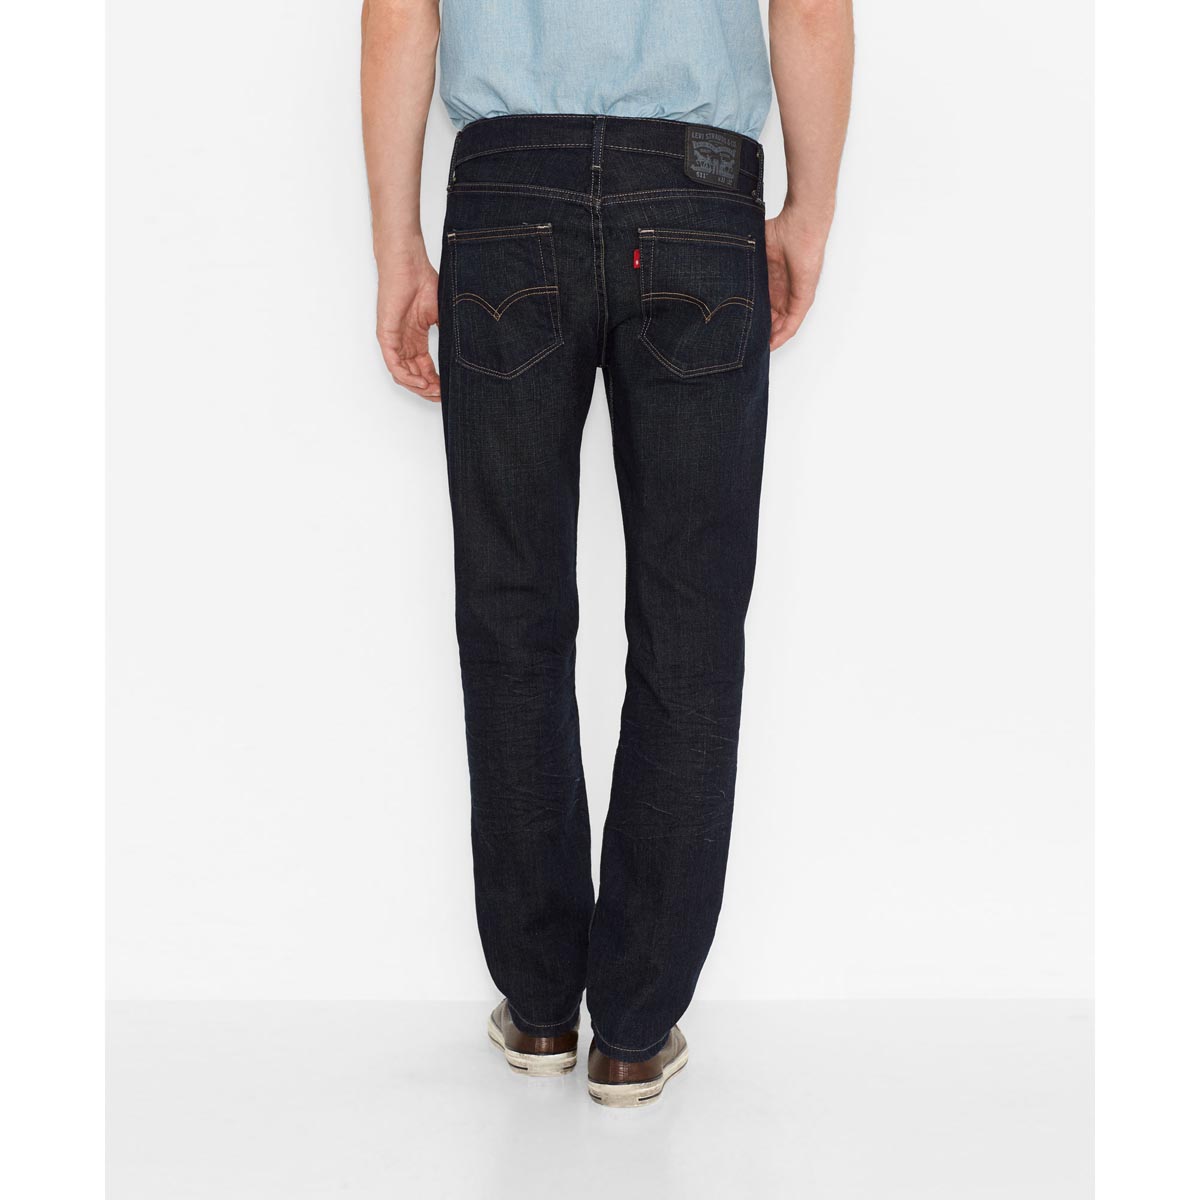 Levi Men's 511 Slim Fit Jeans